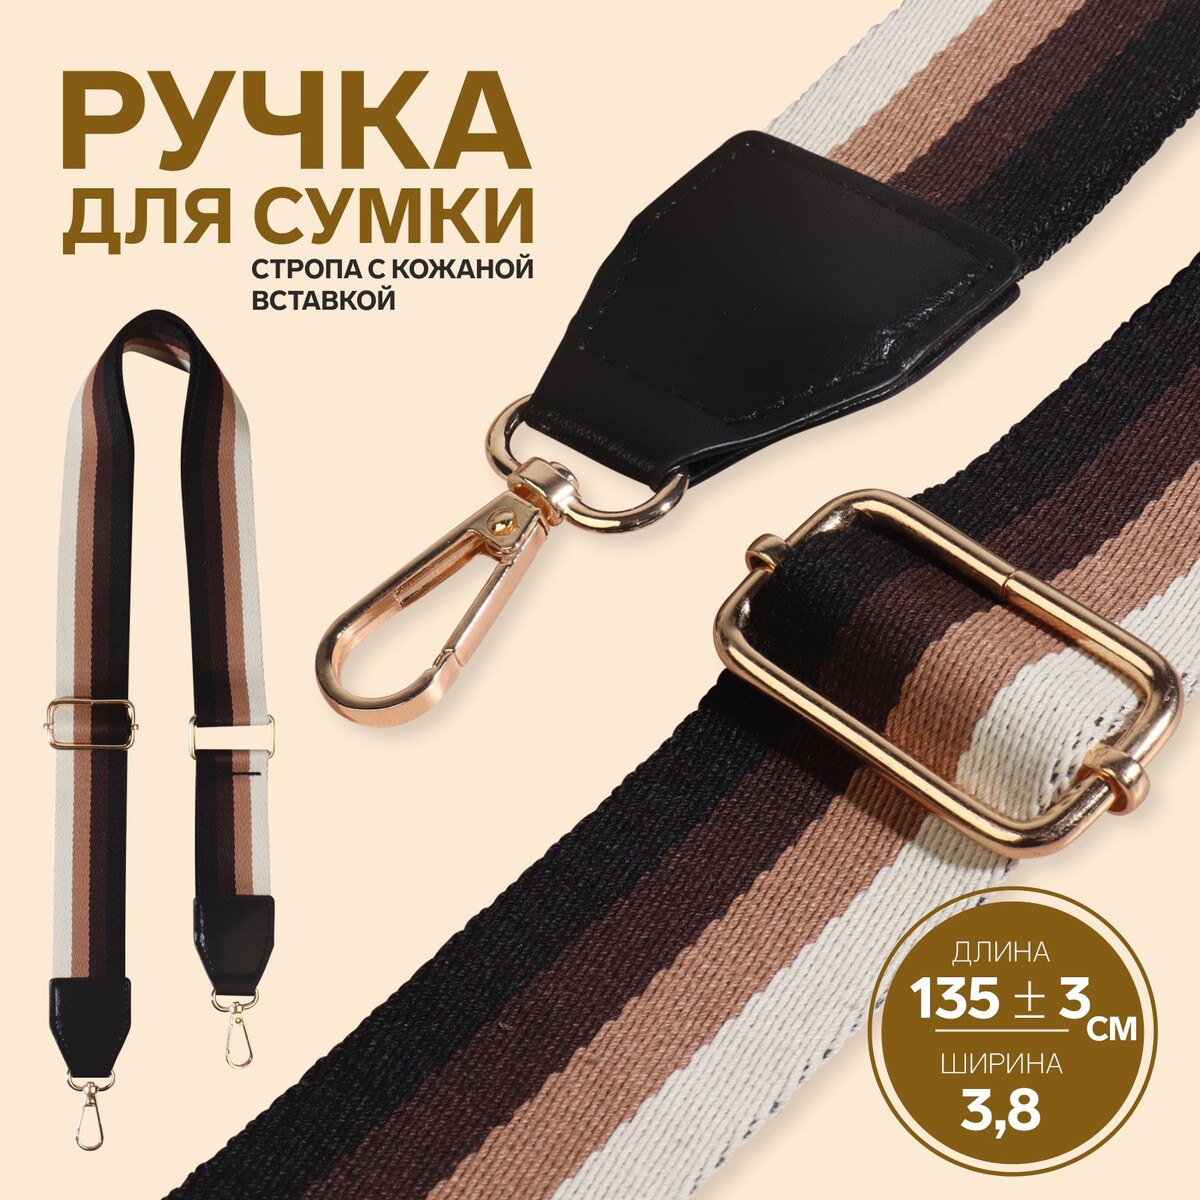 Ручка для сумки, стропа с кожаной вставкой, 139 ± 3 × 3,8 см, цвет черный/коричневый/песочный/золотой коляска posh 2 в 1 группа 0 3 0 22кг бежевый рама золотой блеск cam